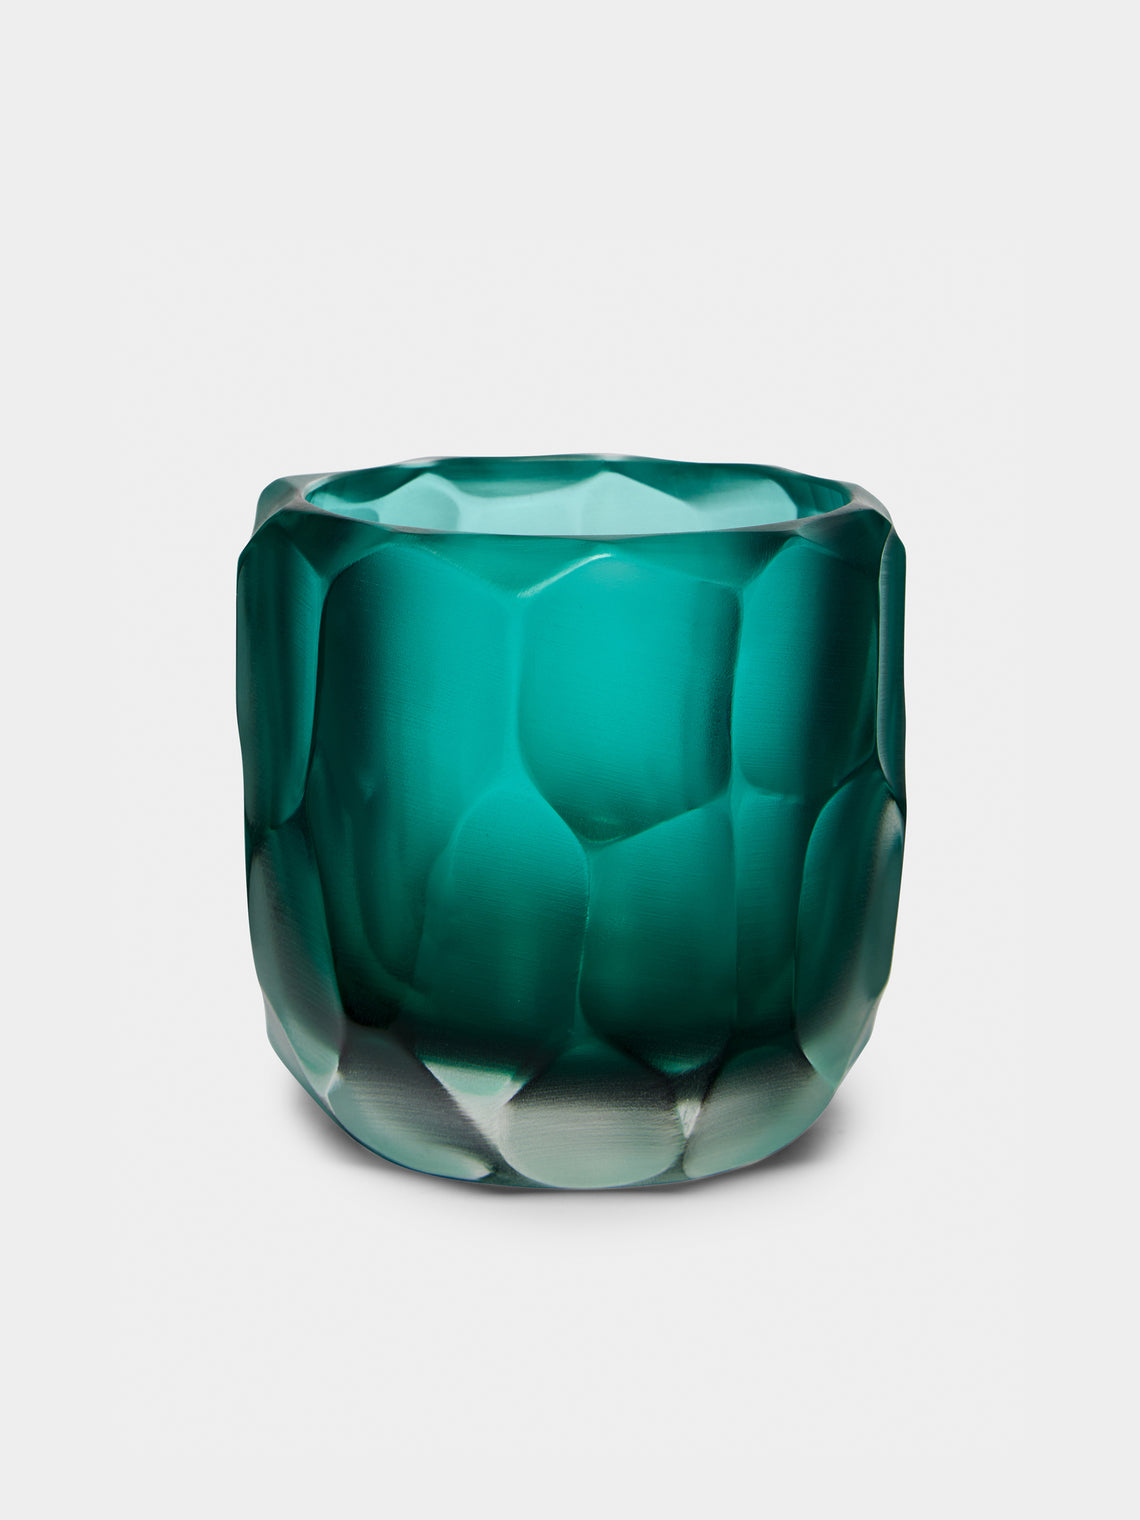 Micheluzzi Glass - Rullo Acqua Hand-Blown Murano Glass Vase - Teal - ABASK - 